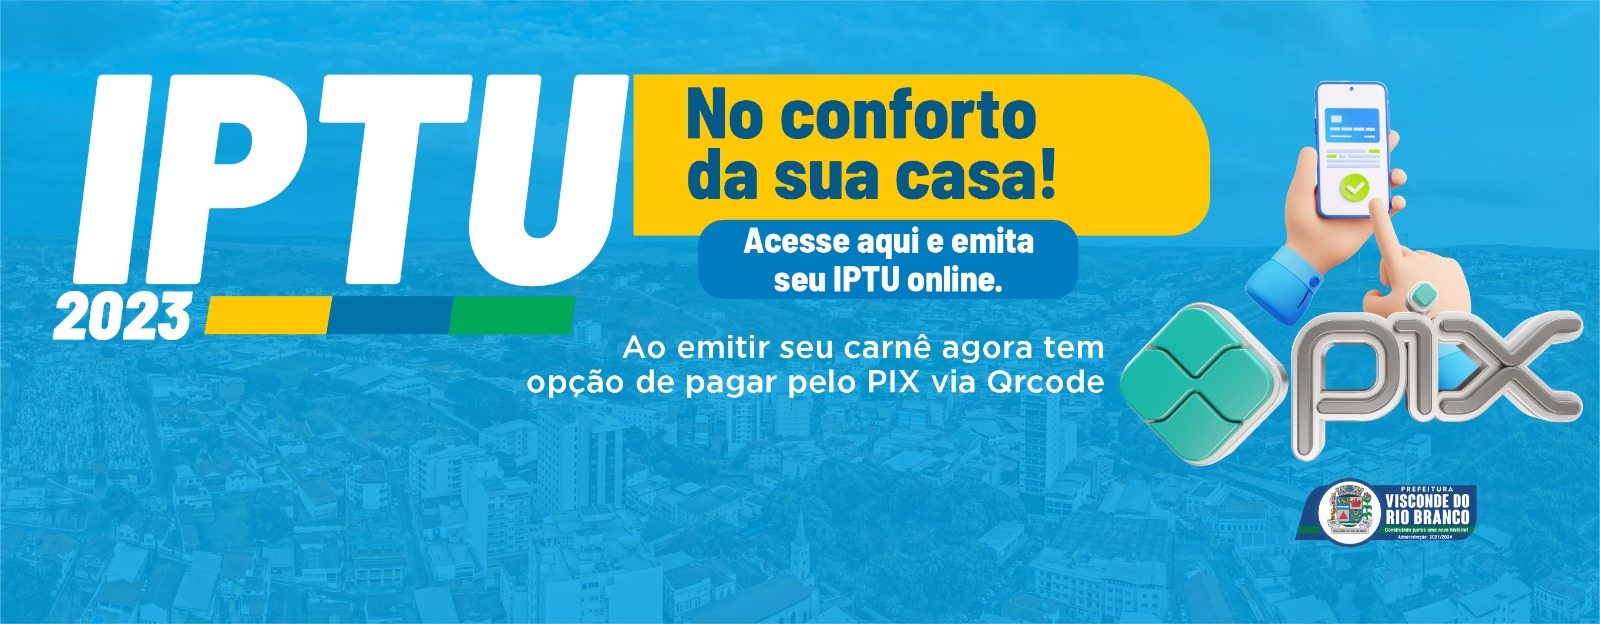 EMISSÃO ONLINE DO IPTU 2023 - PAGAMENTO VIA PIX